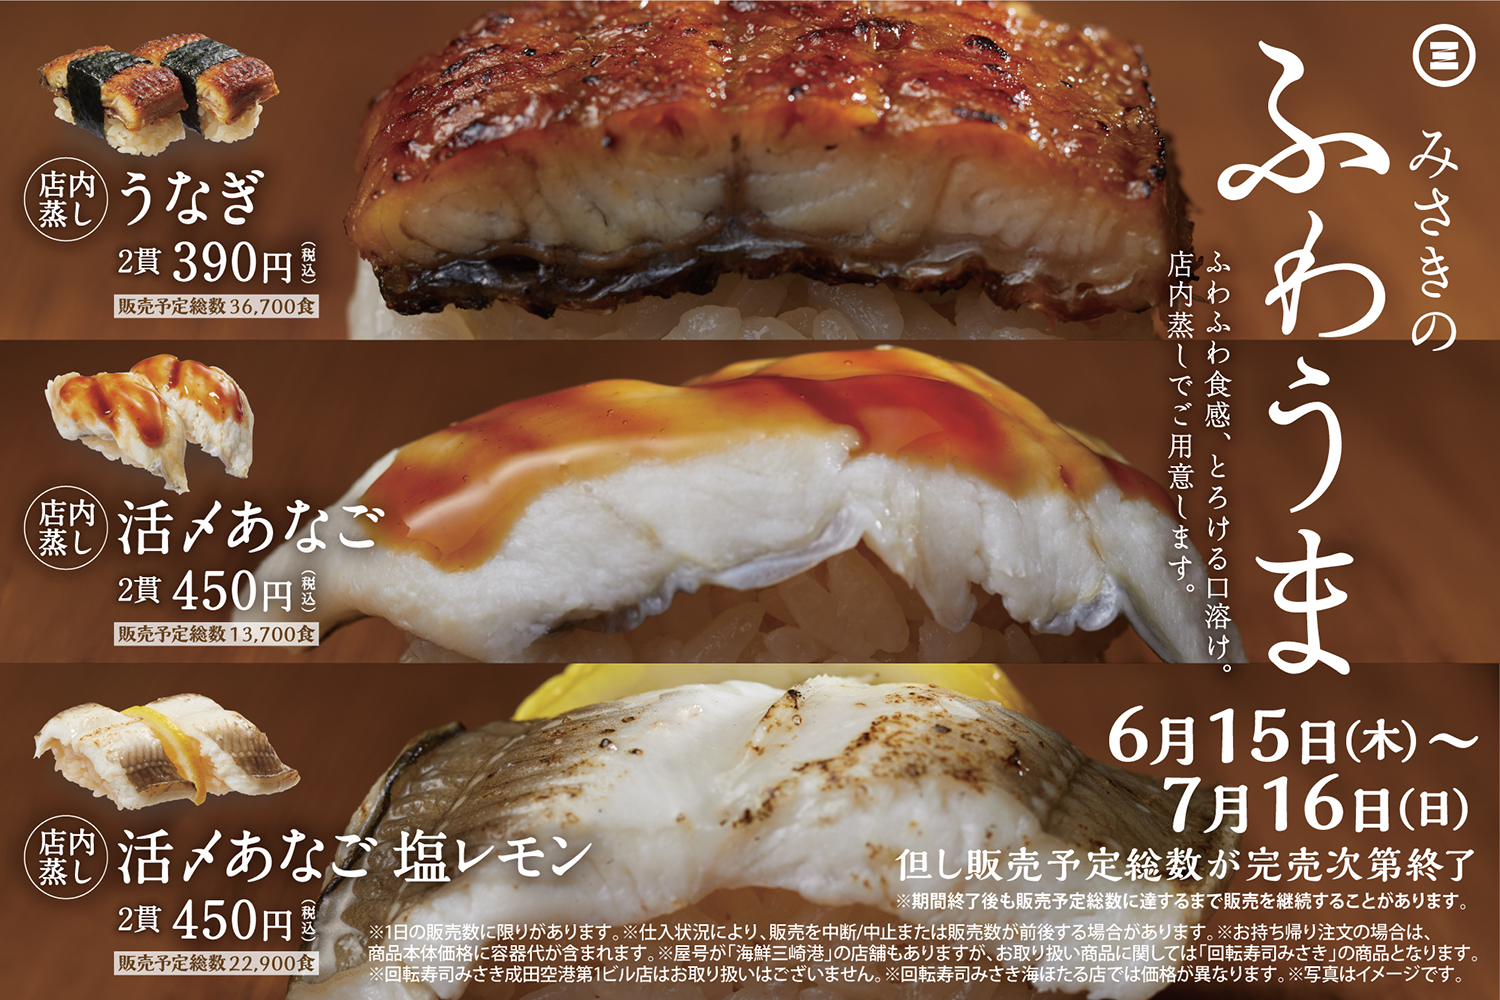 日本迴轉壽司三崎（回転寿司みさき）推出夏季限定「鰻魚」「穴子」以及當季「竹莢魚」，請享受店內蒸烹出的柔軟美味